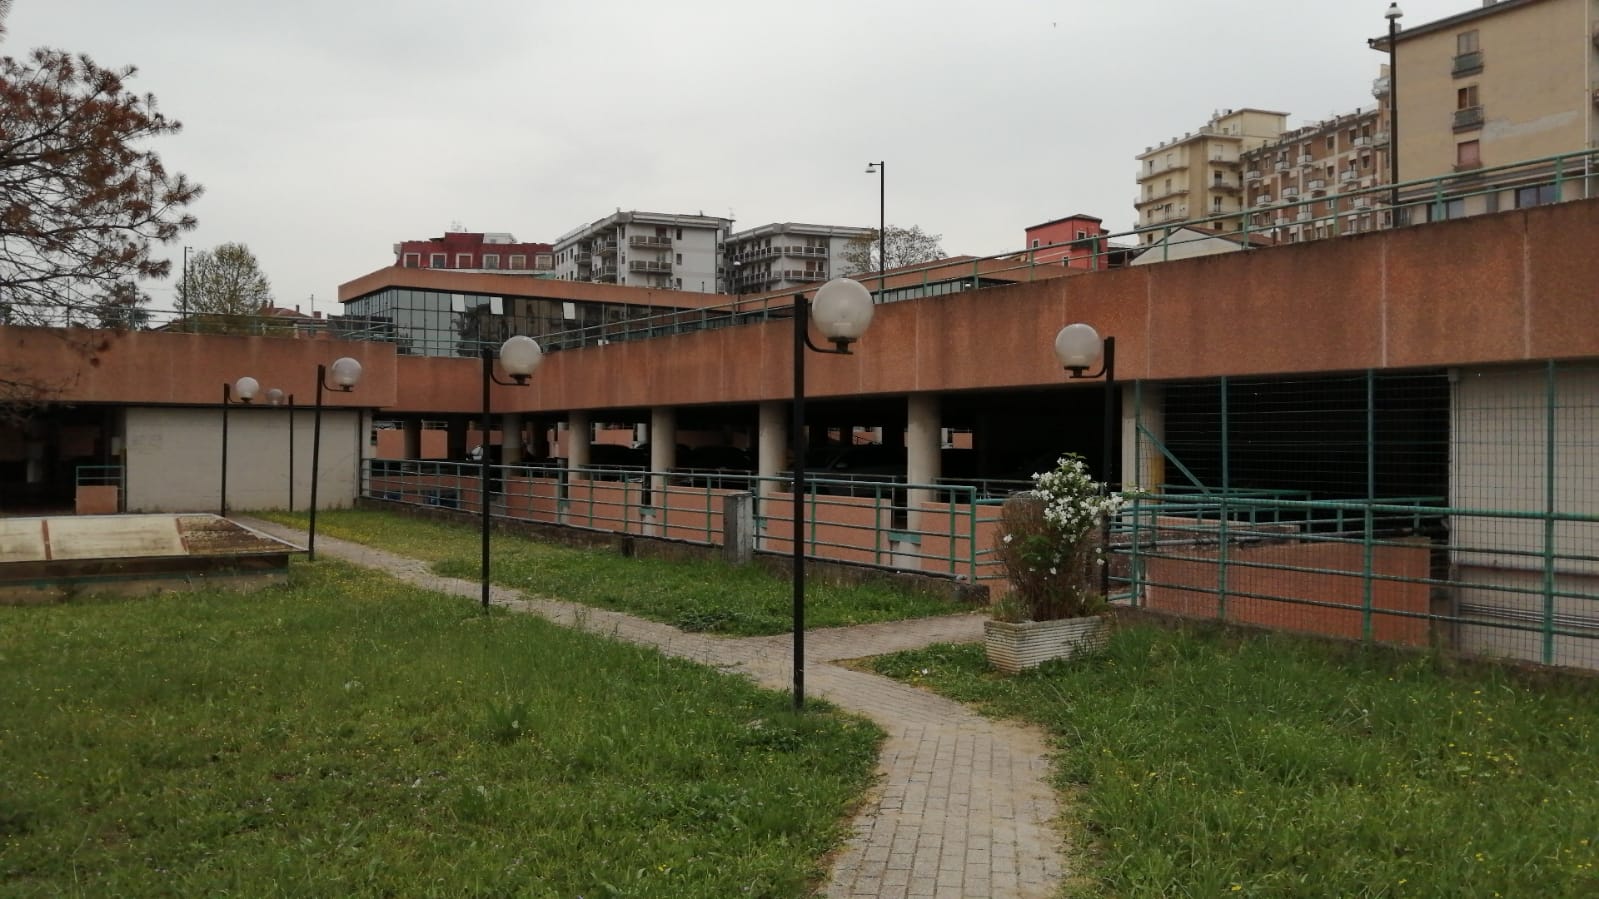 Megaparcheggio di Benevento, De Stasio chiede la convocazione delle commissioni attivita’ produttive e traffico/parcheggi